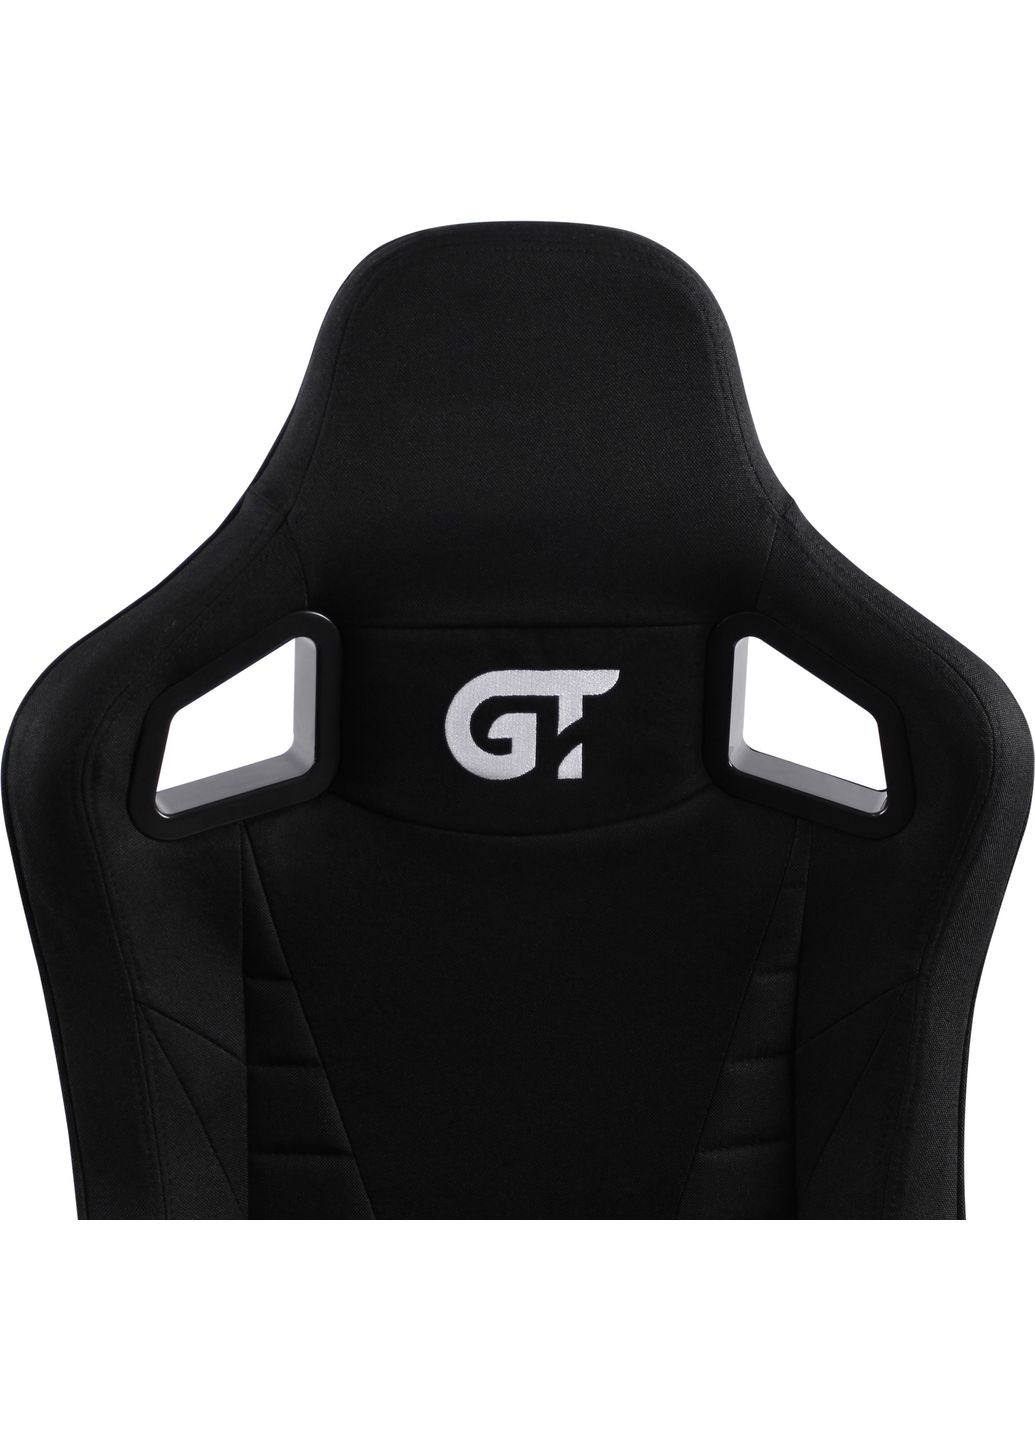 Геймерское кресло X5113F Fabric Black GT Racer (293944112)